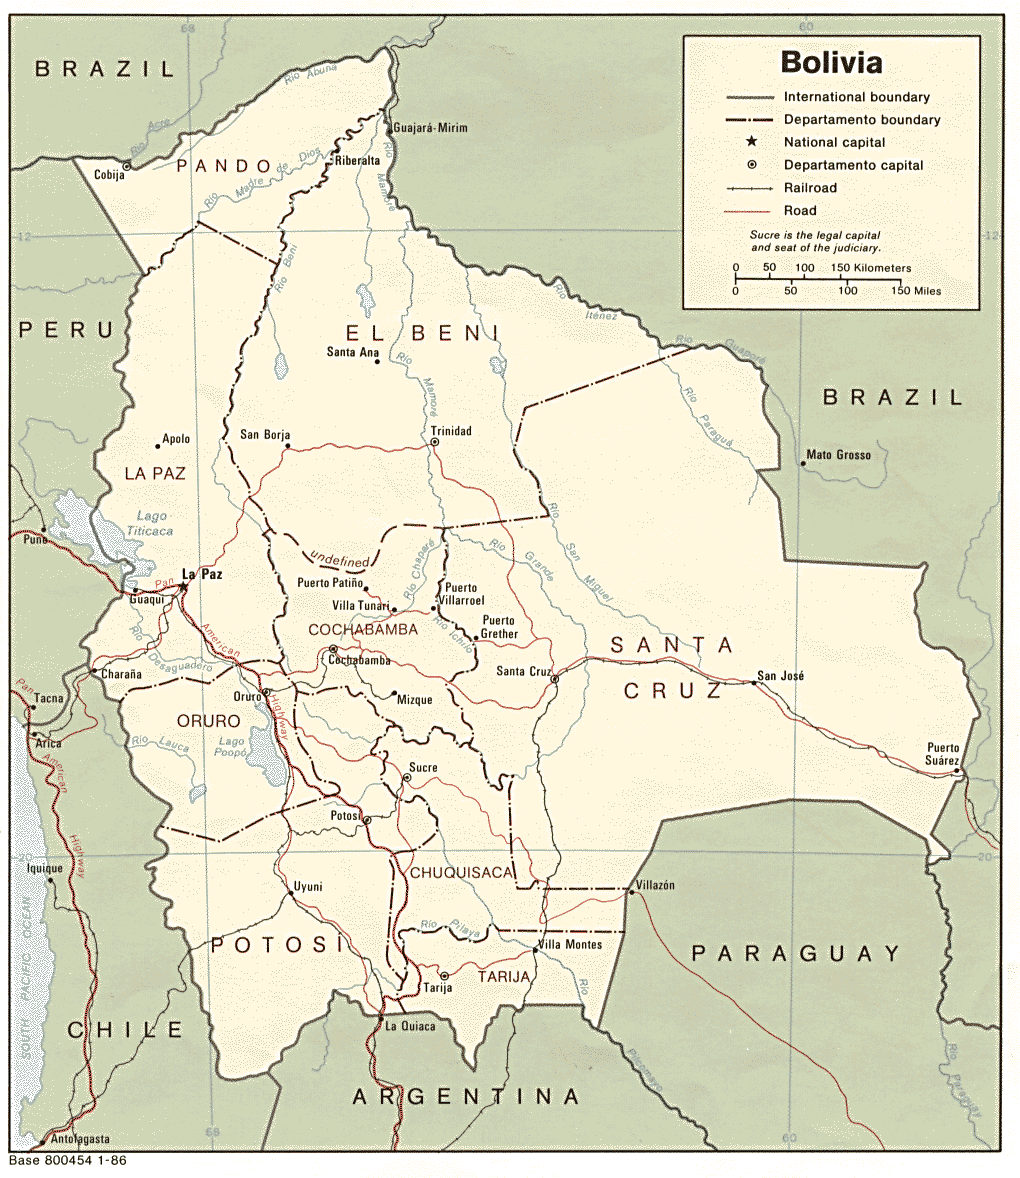 Bolivia Political Map 1986